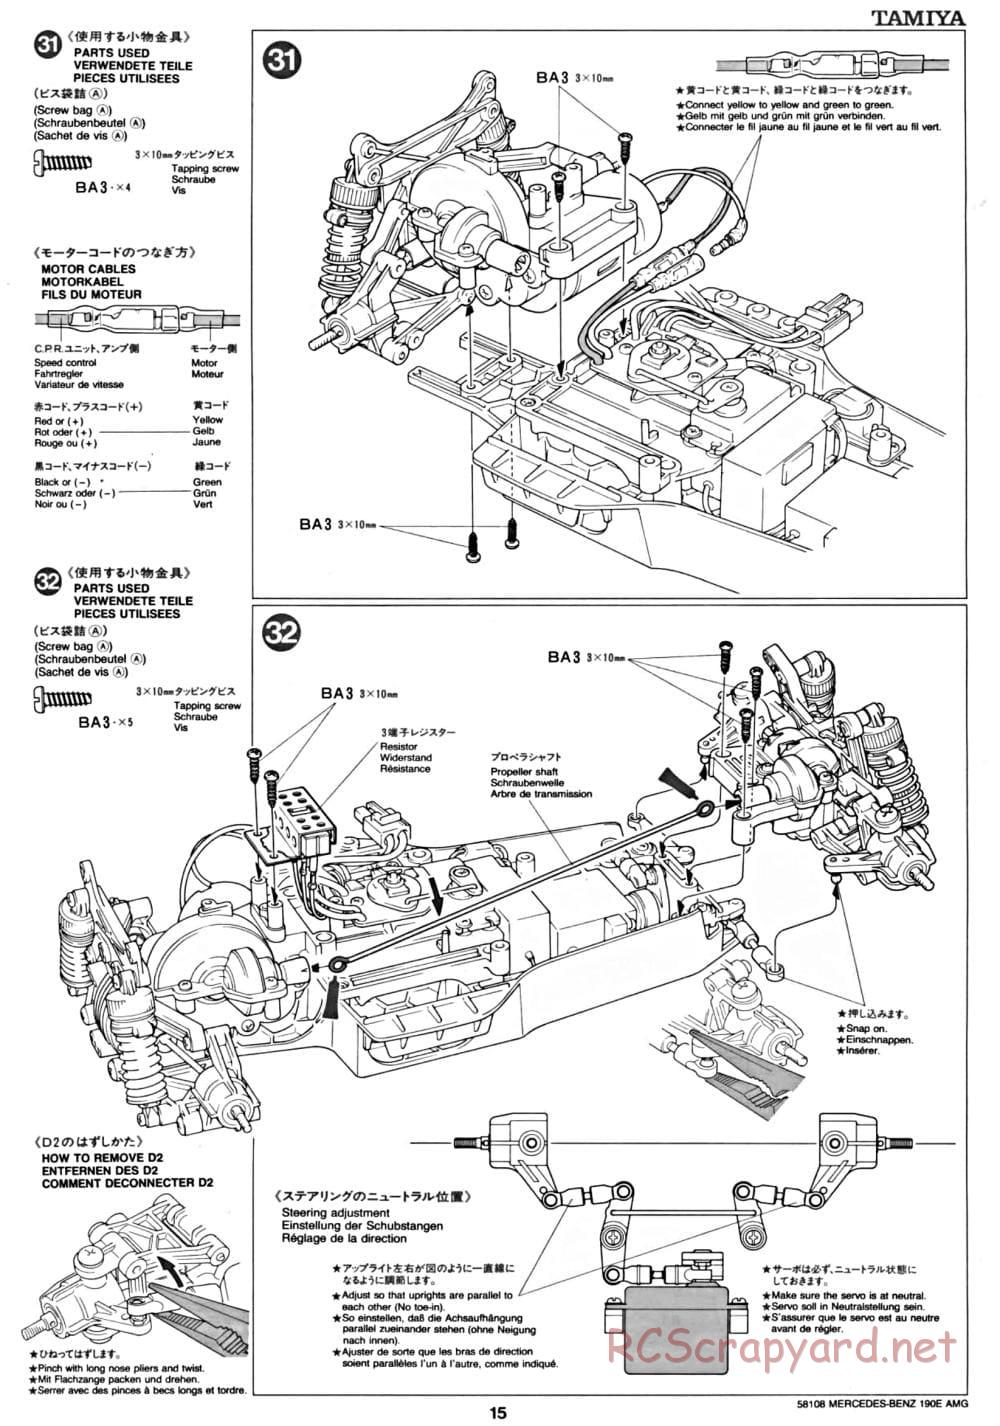 Tamiya - Mercedes Benz 190E Evo.II AMG - TA-01 Chassis - Manual - Page 15